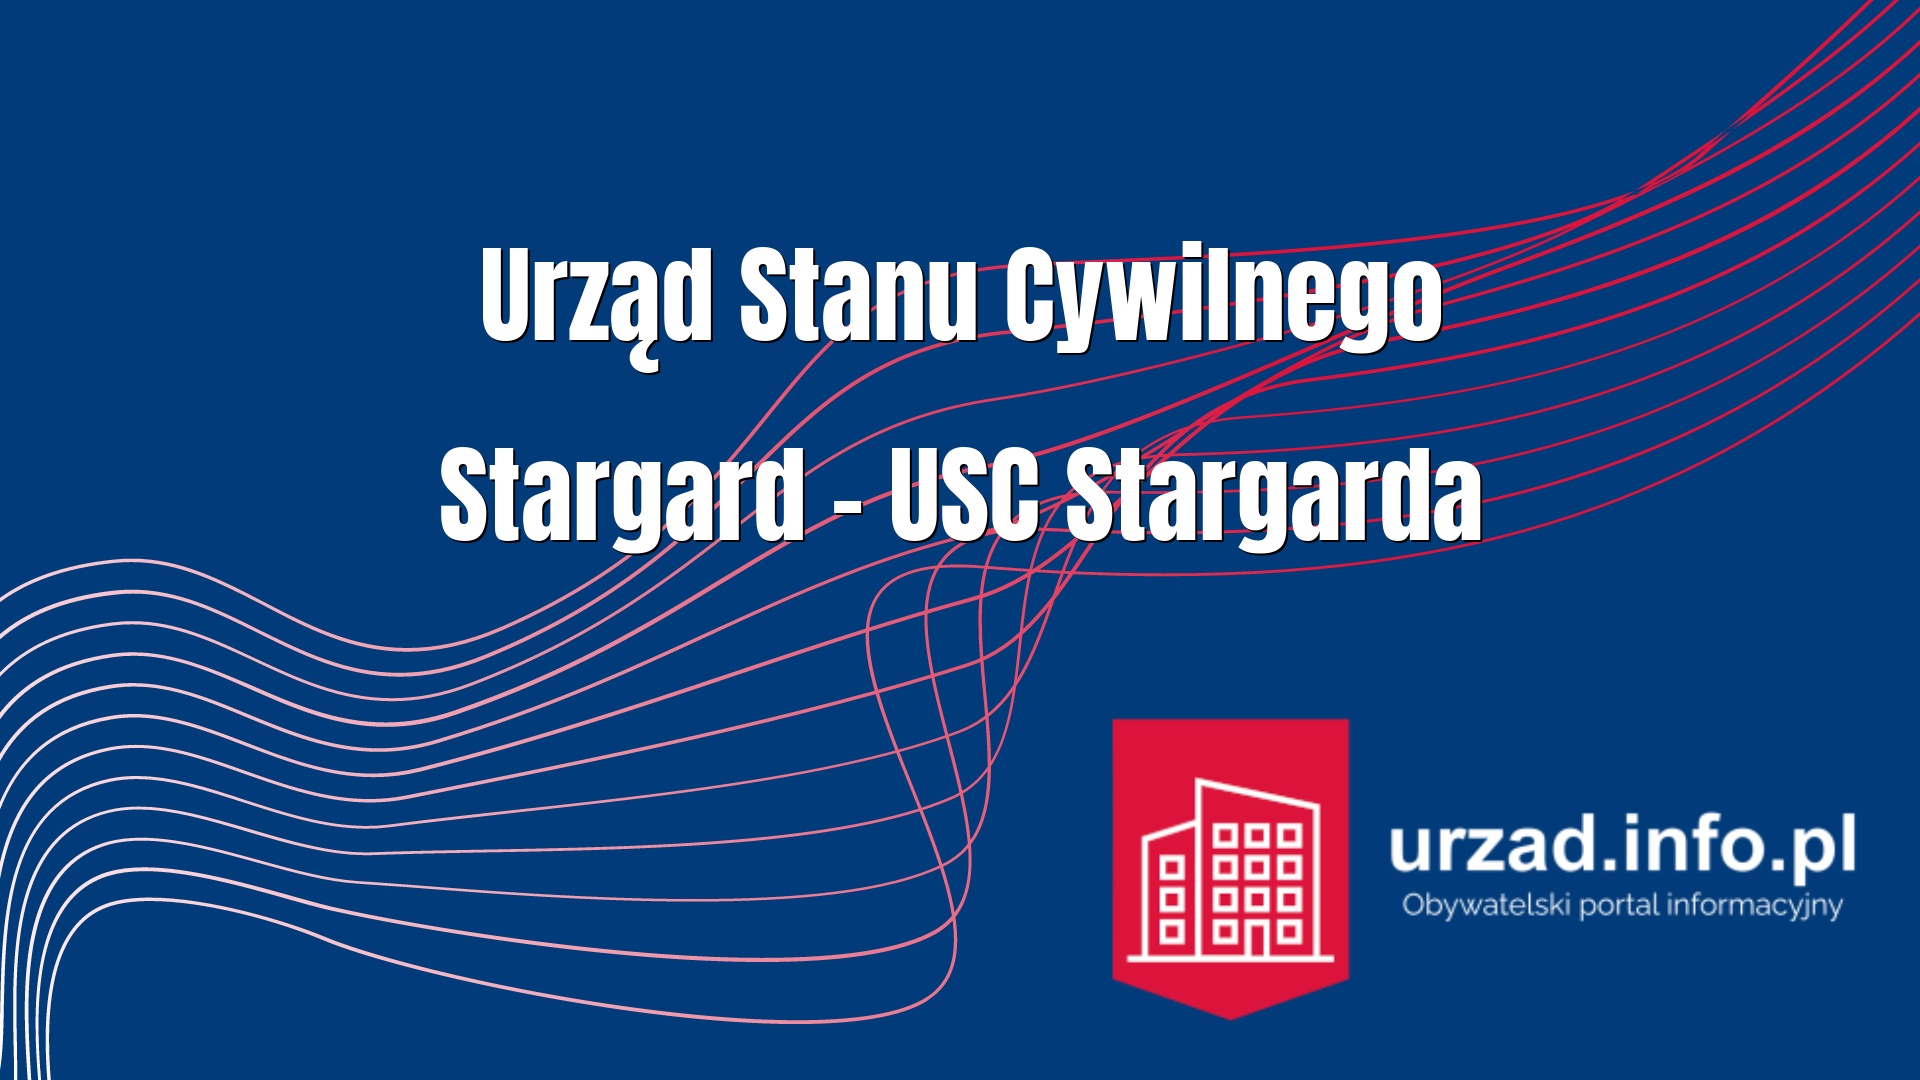 Urząd Stanu Cywilnego Stargard – USC Stargarda